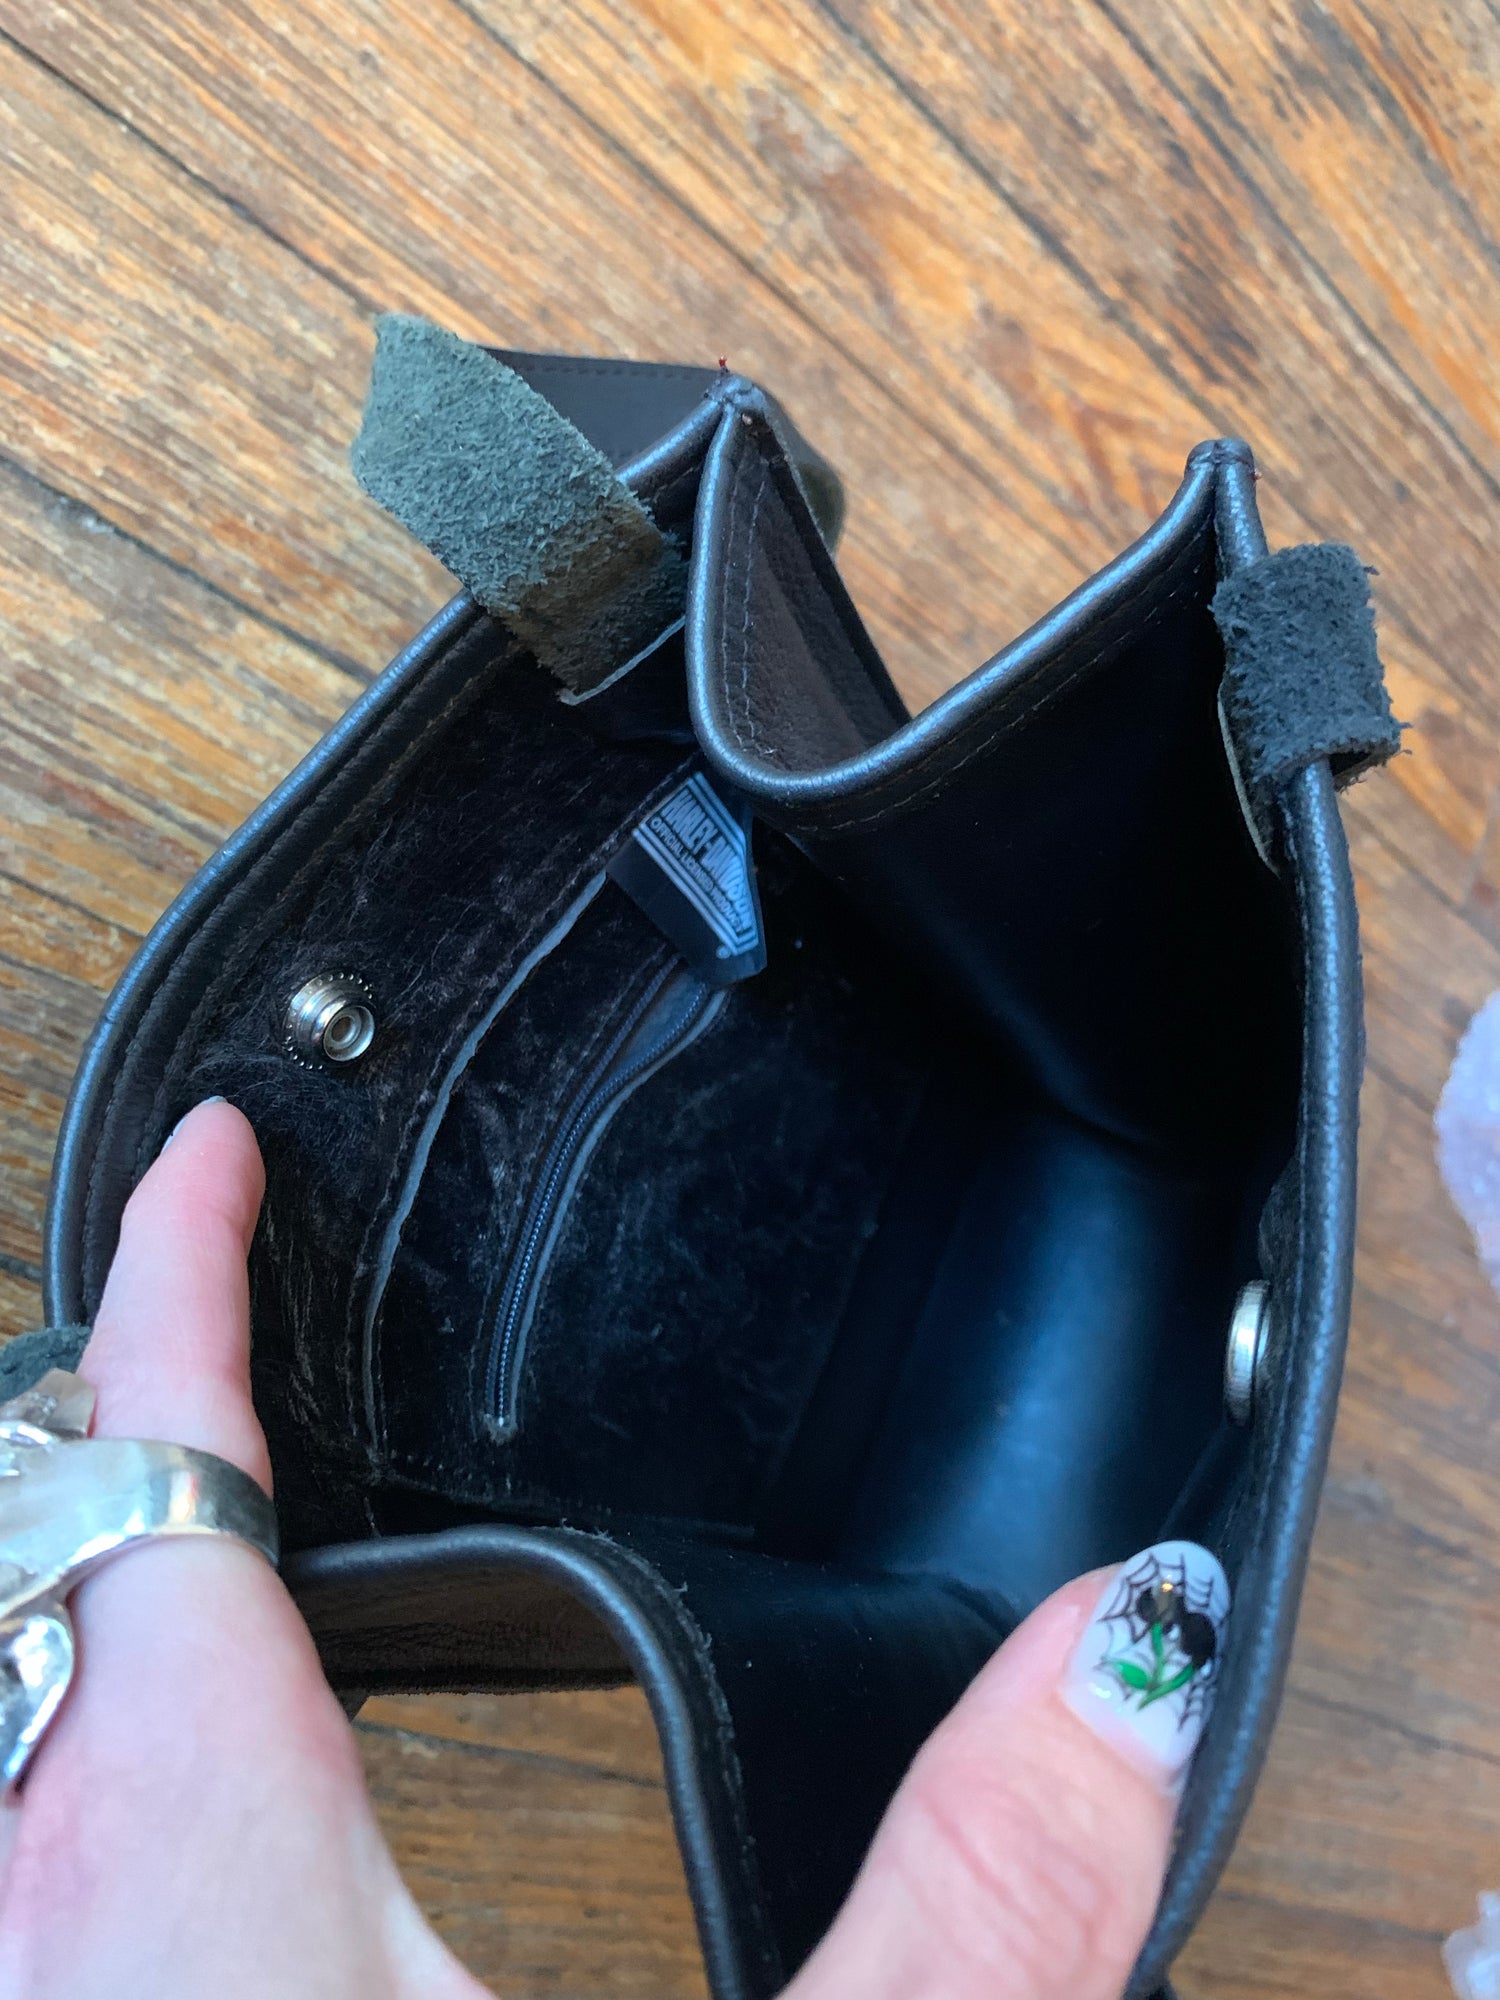 Leather handbag HARLEY DAVIDSON Black in Leather - 33512631